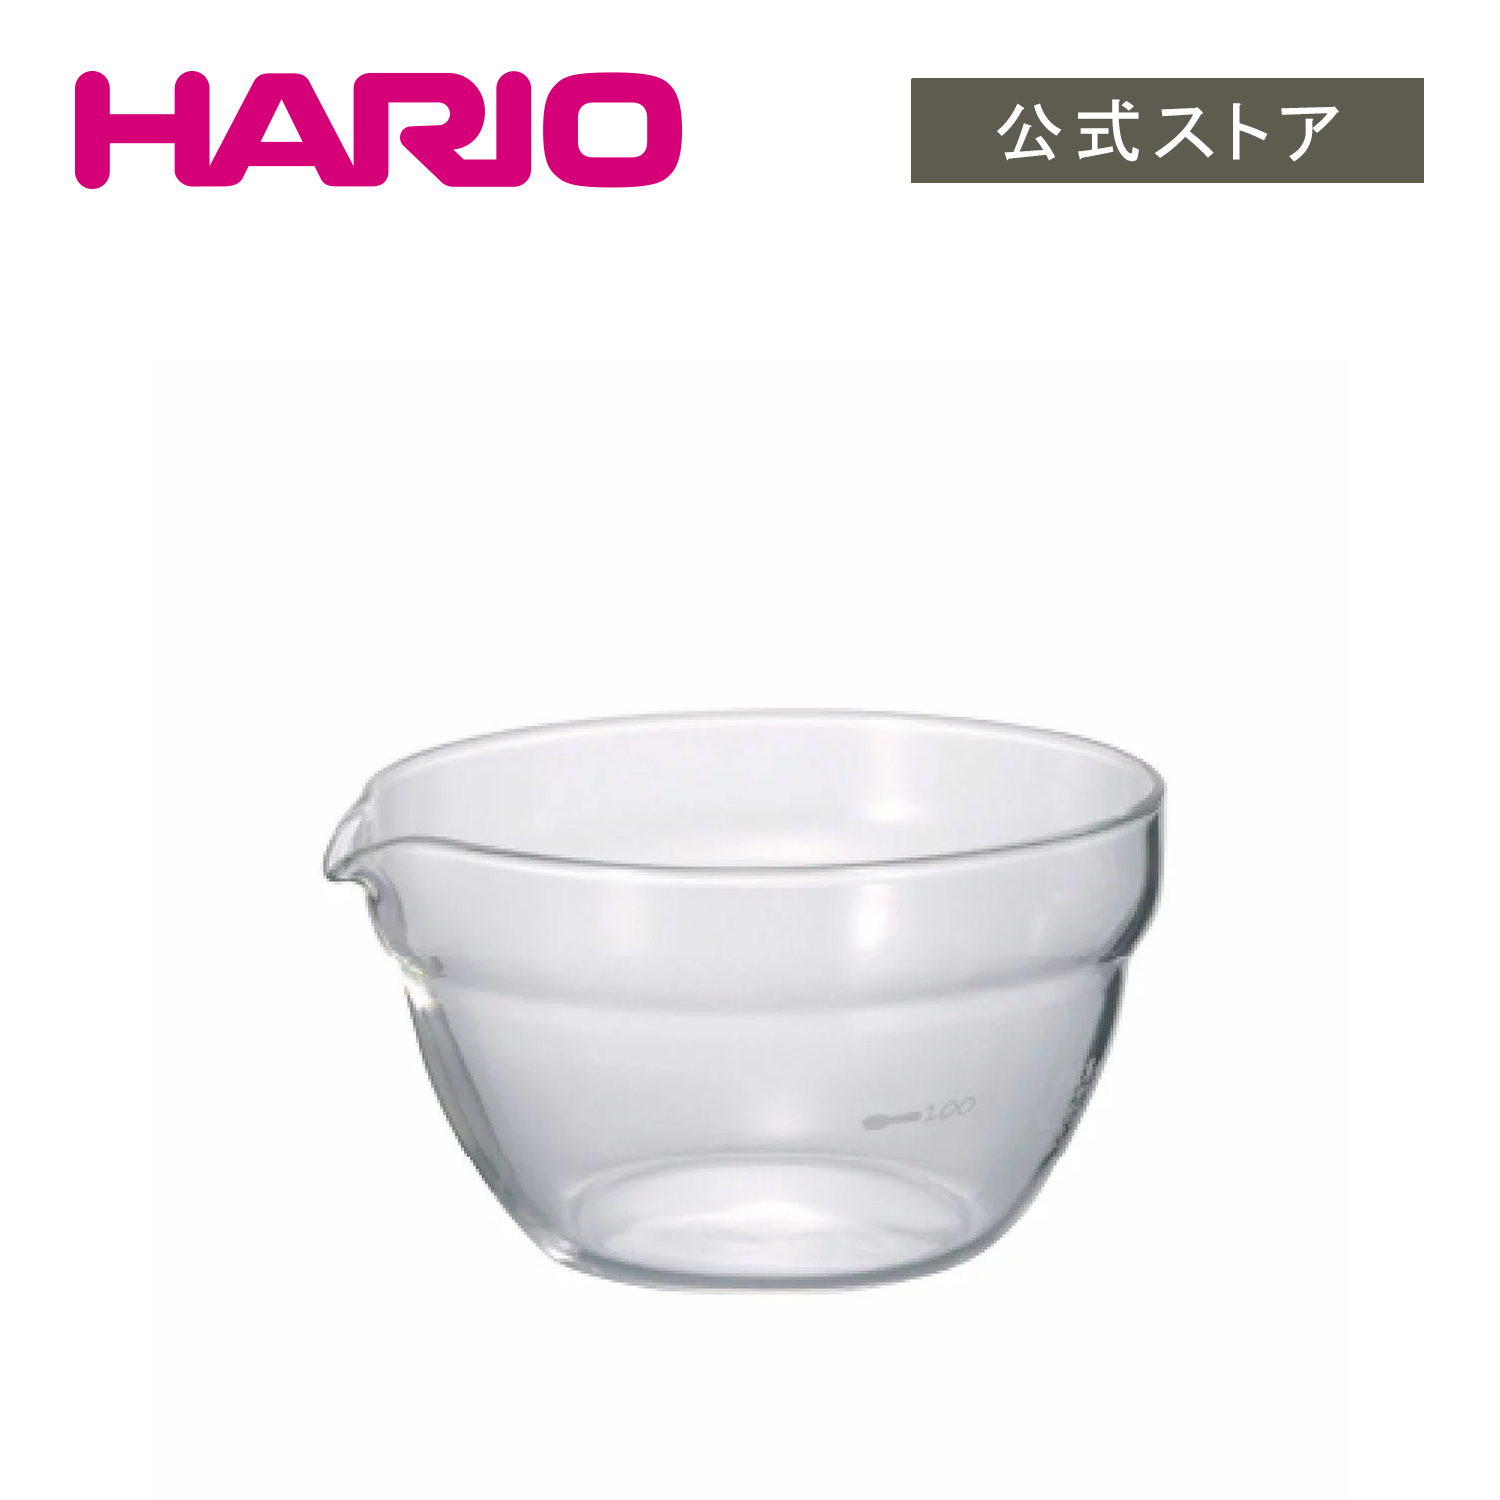 【楽天市場】【公式ショップ】HARIO 耐熱ガラスカップ5個セット 